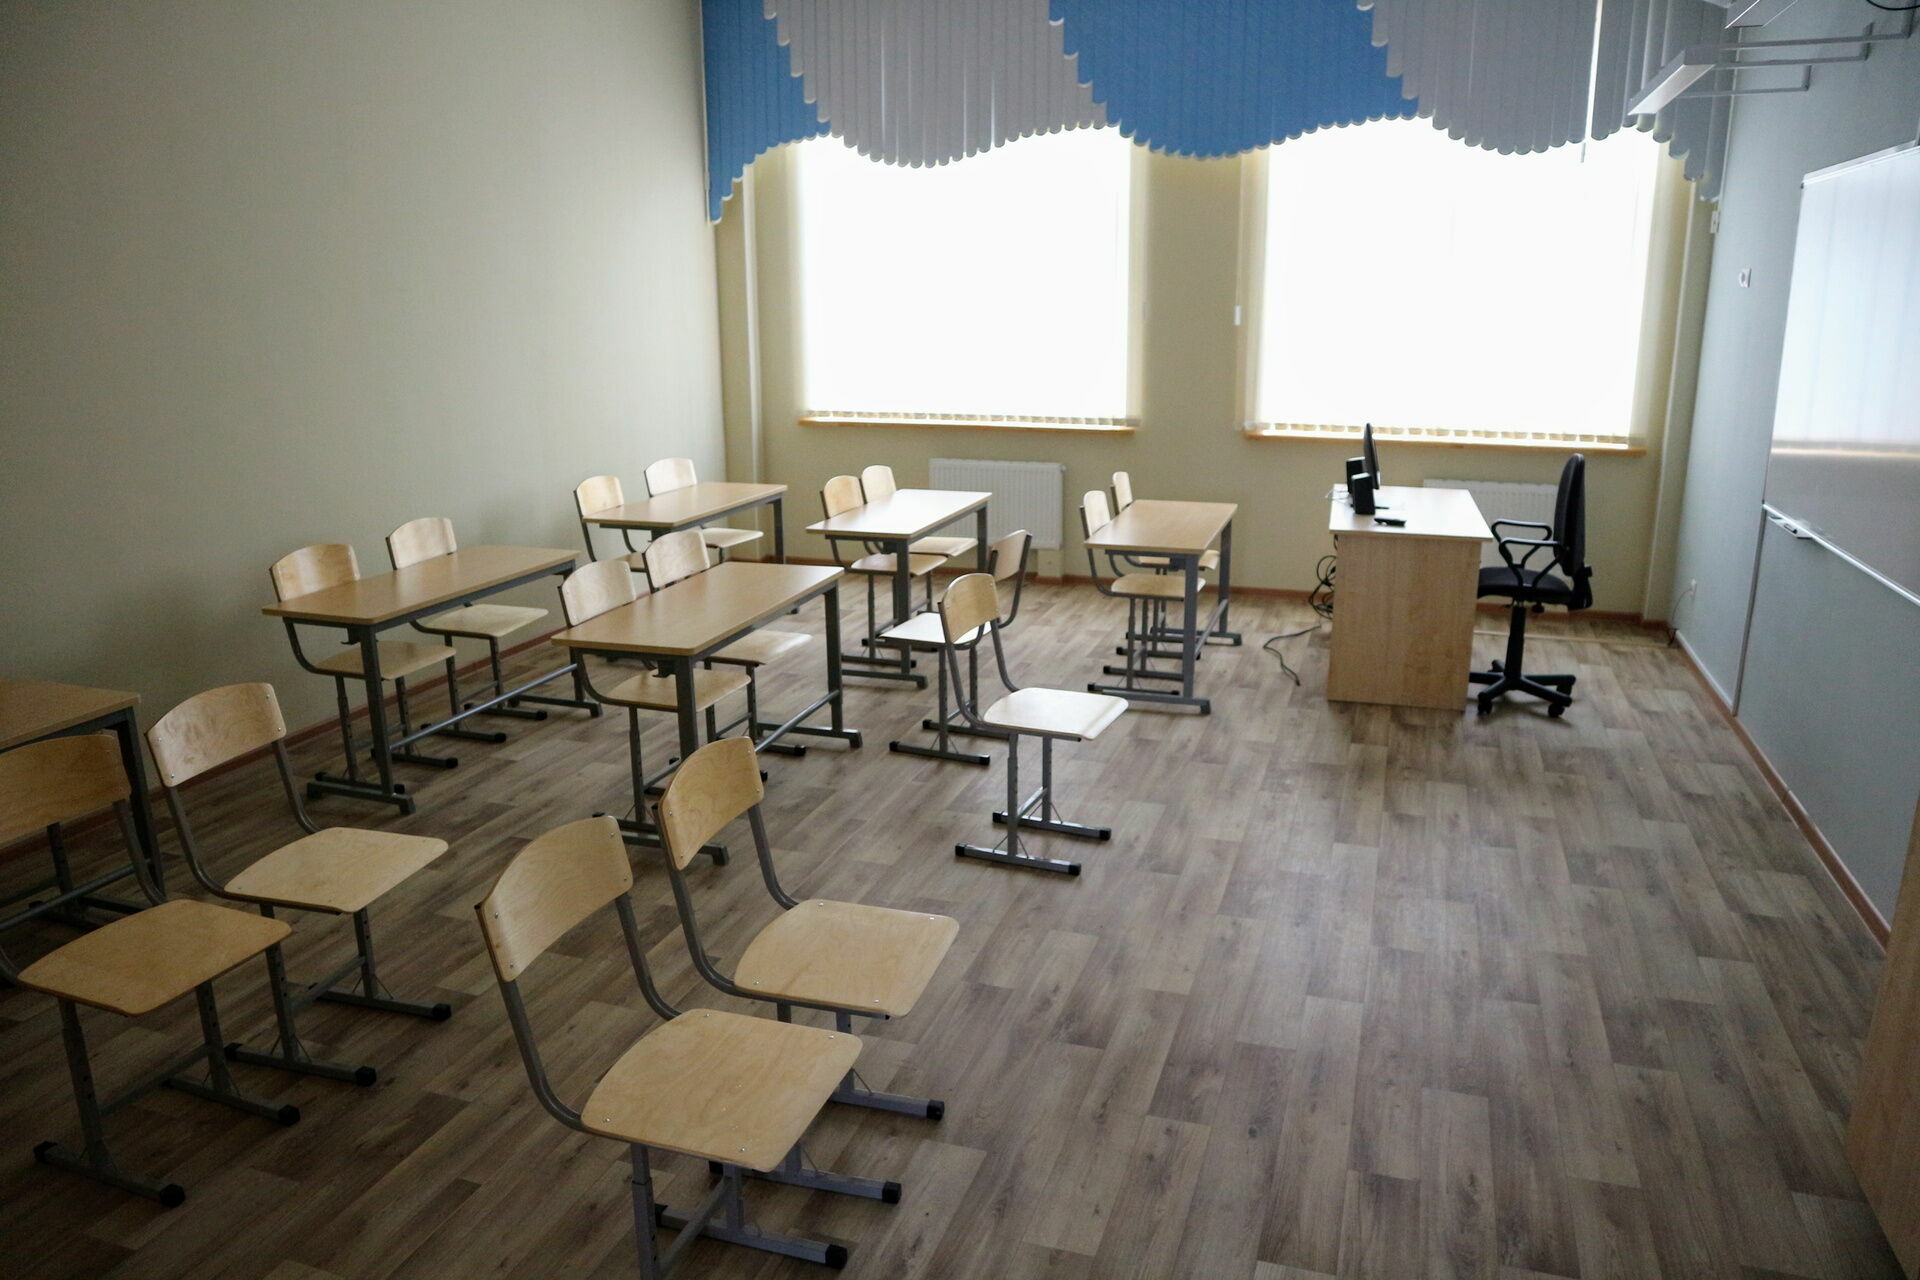 Школьники в Карелии переходят на дистанционное обучение